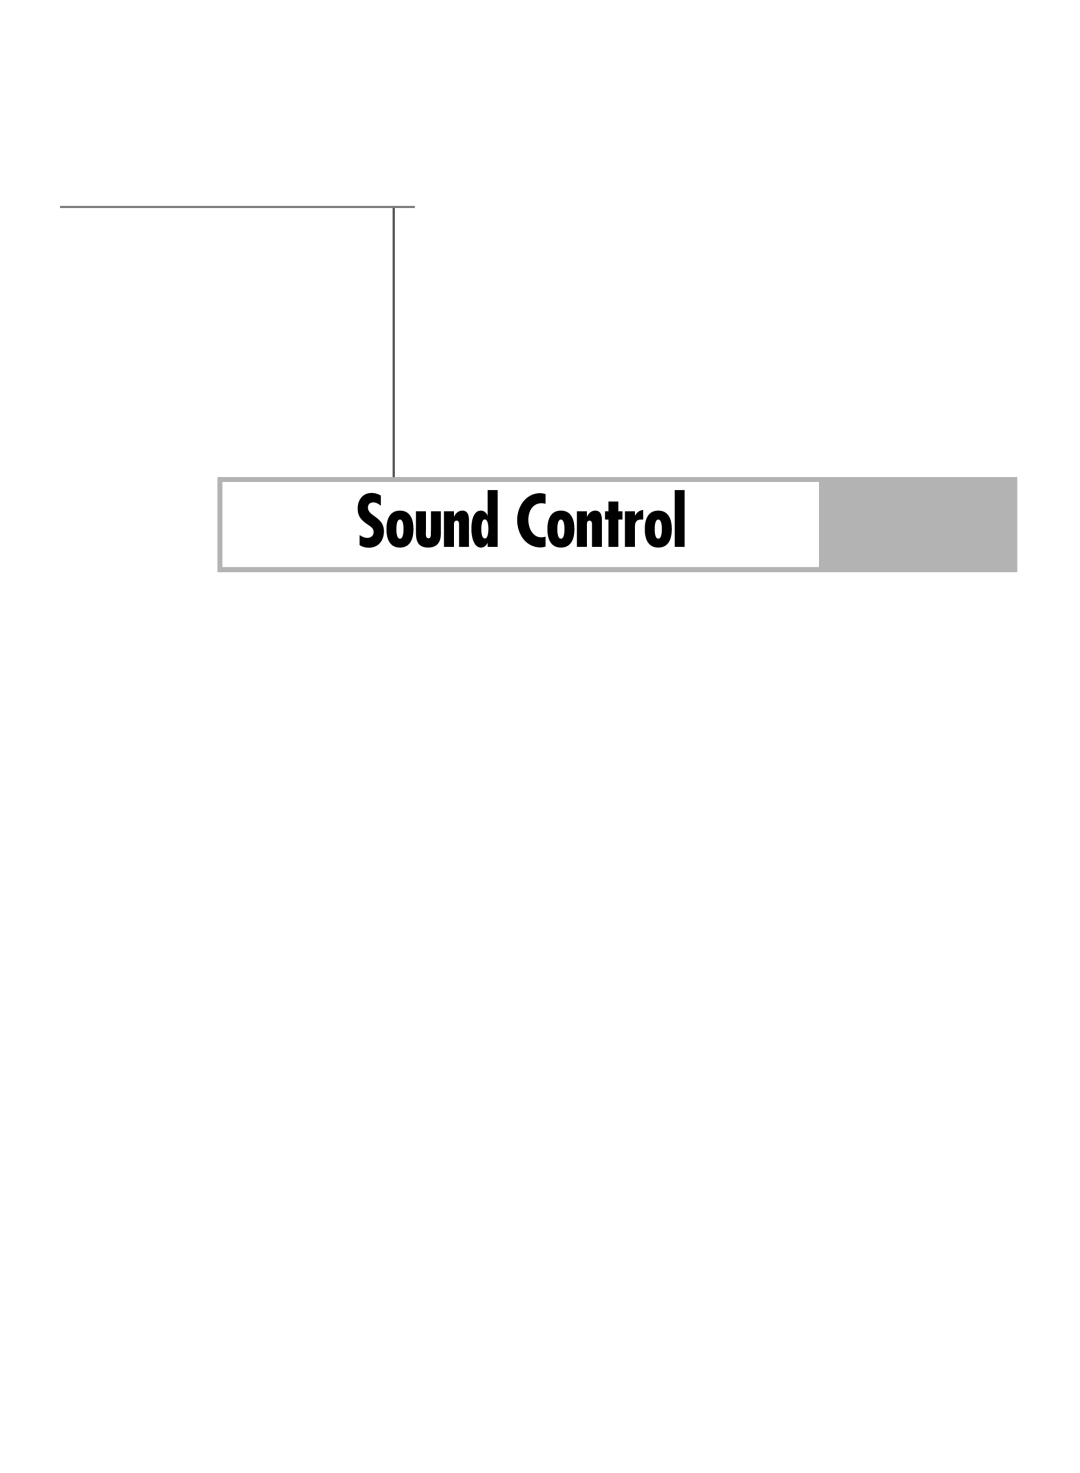 Samsung HL-R5688W manual Sound Control 